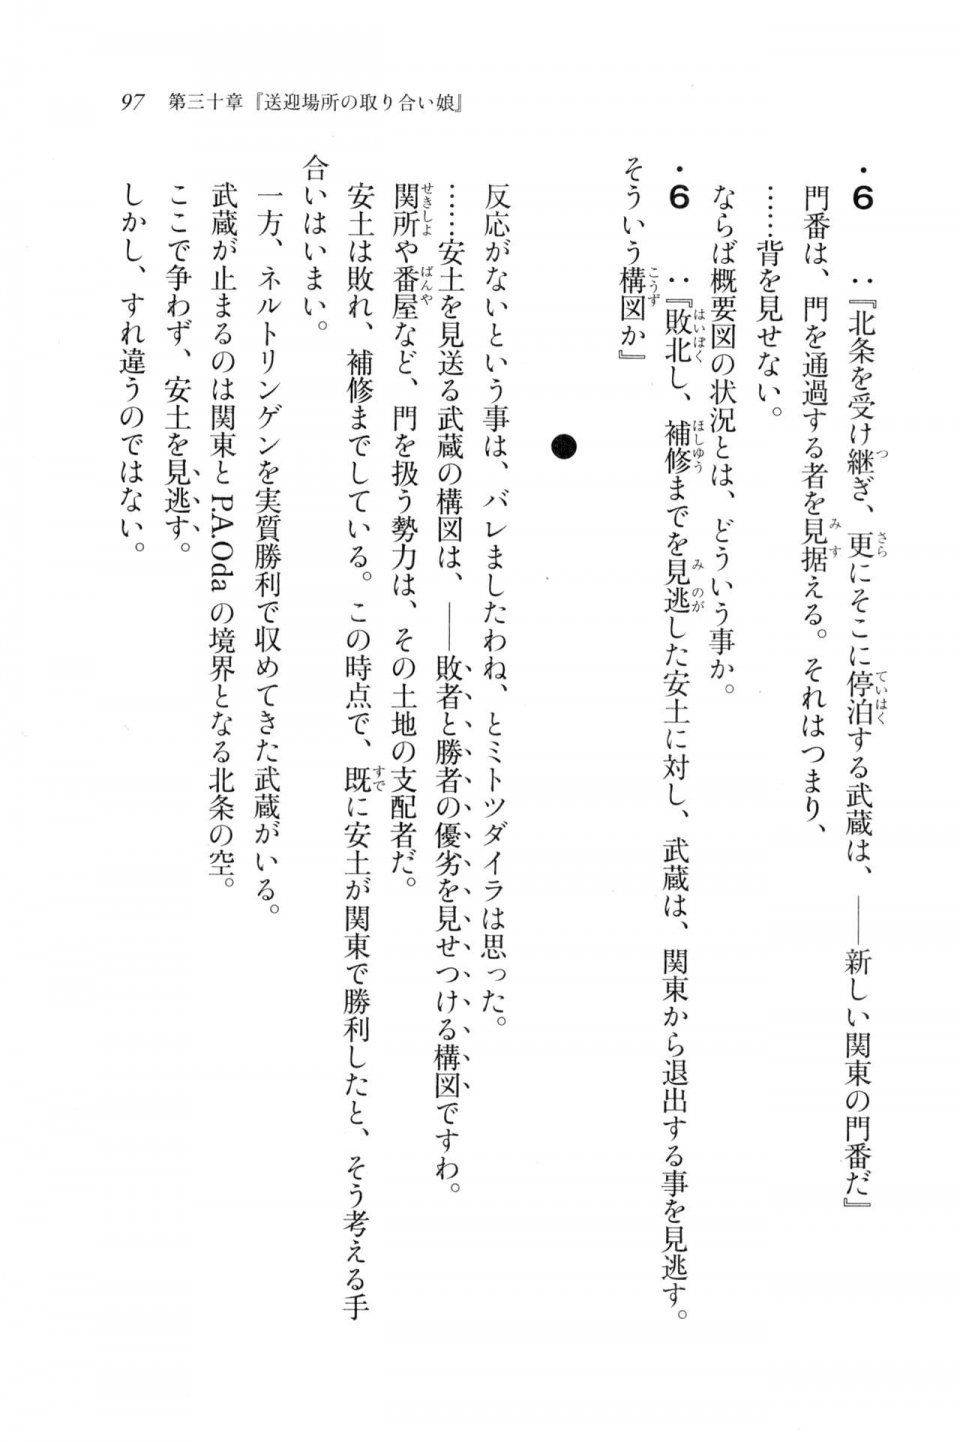 Kyoukai Senjou no Horizon LN Vol 20(8B) - Photo #97